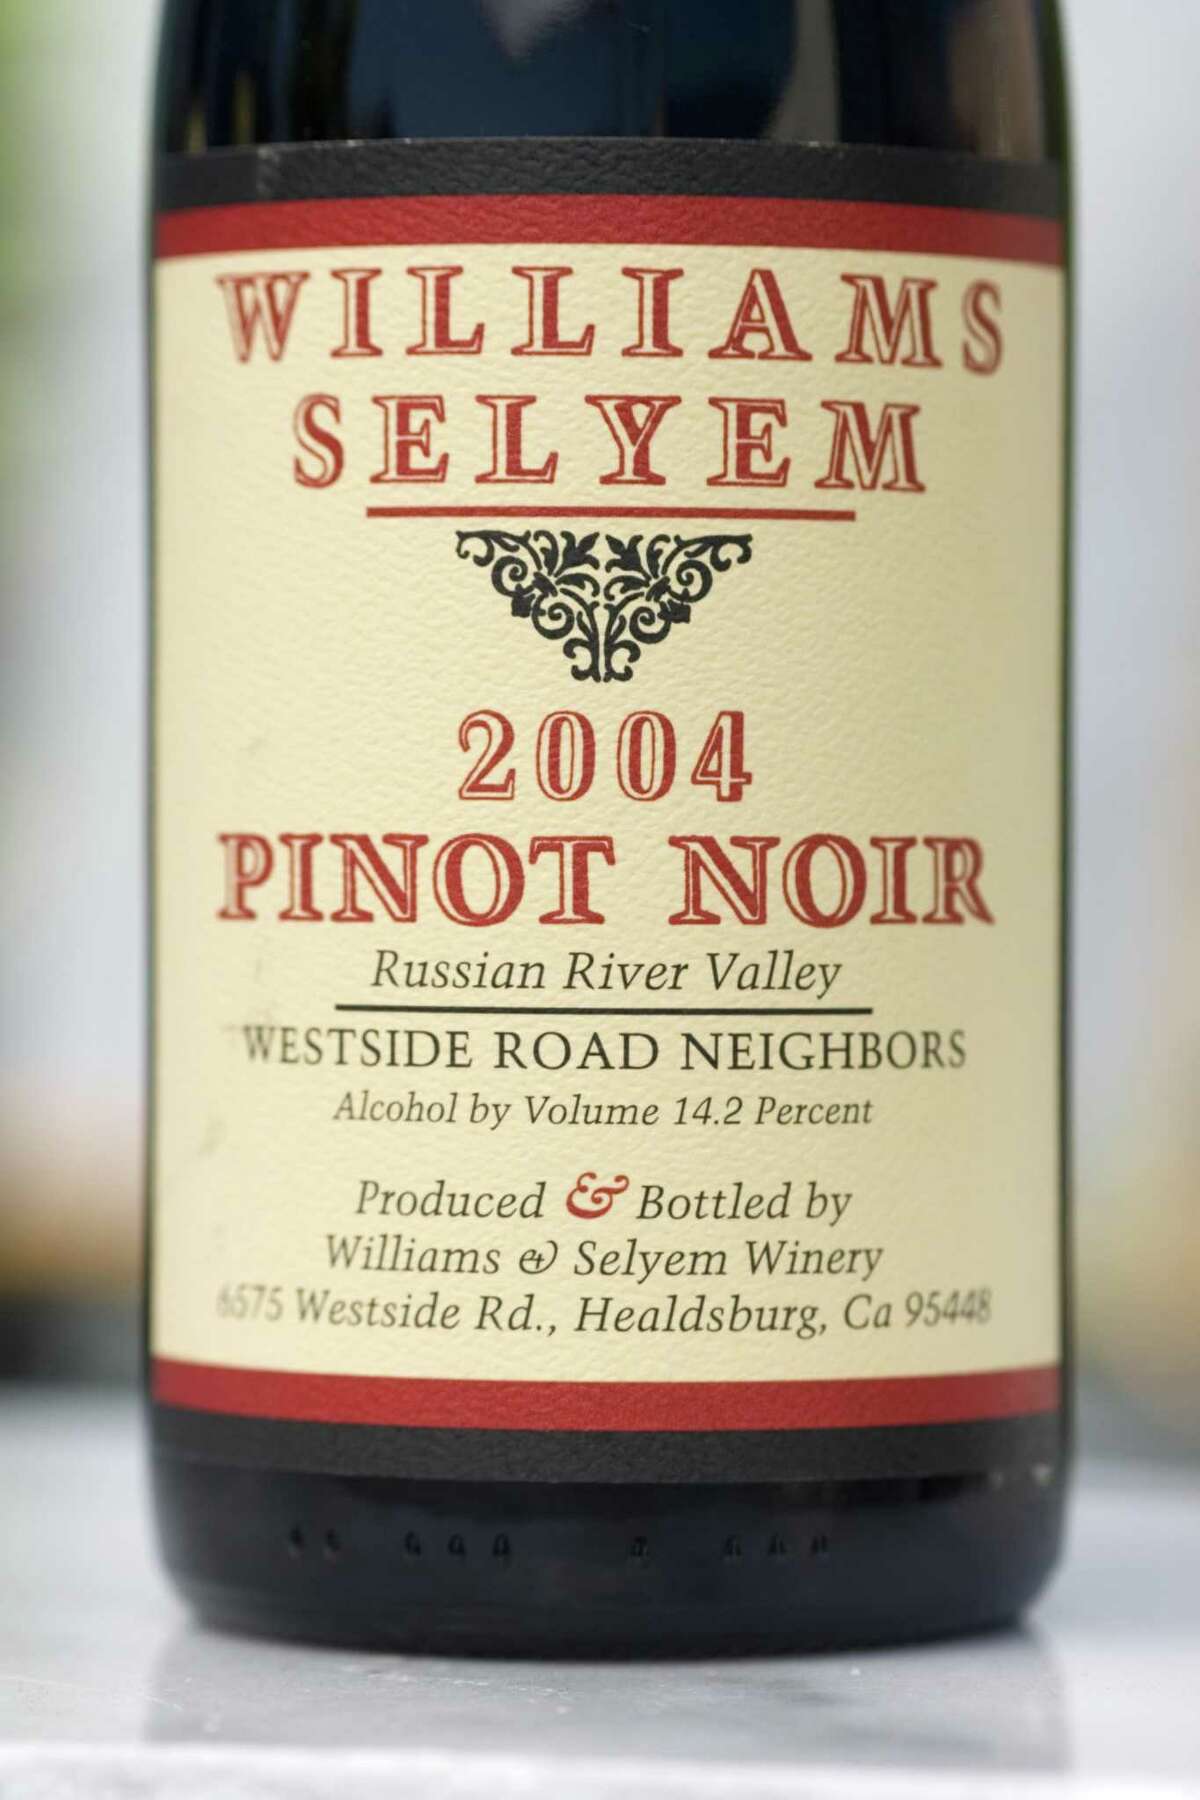 An older vintage of Williams Selyem Westside Road Neighbors Pinot Noir.